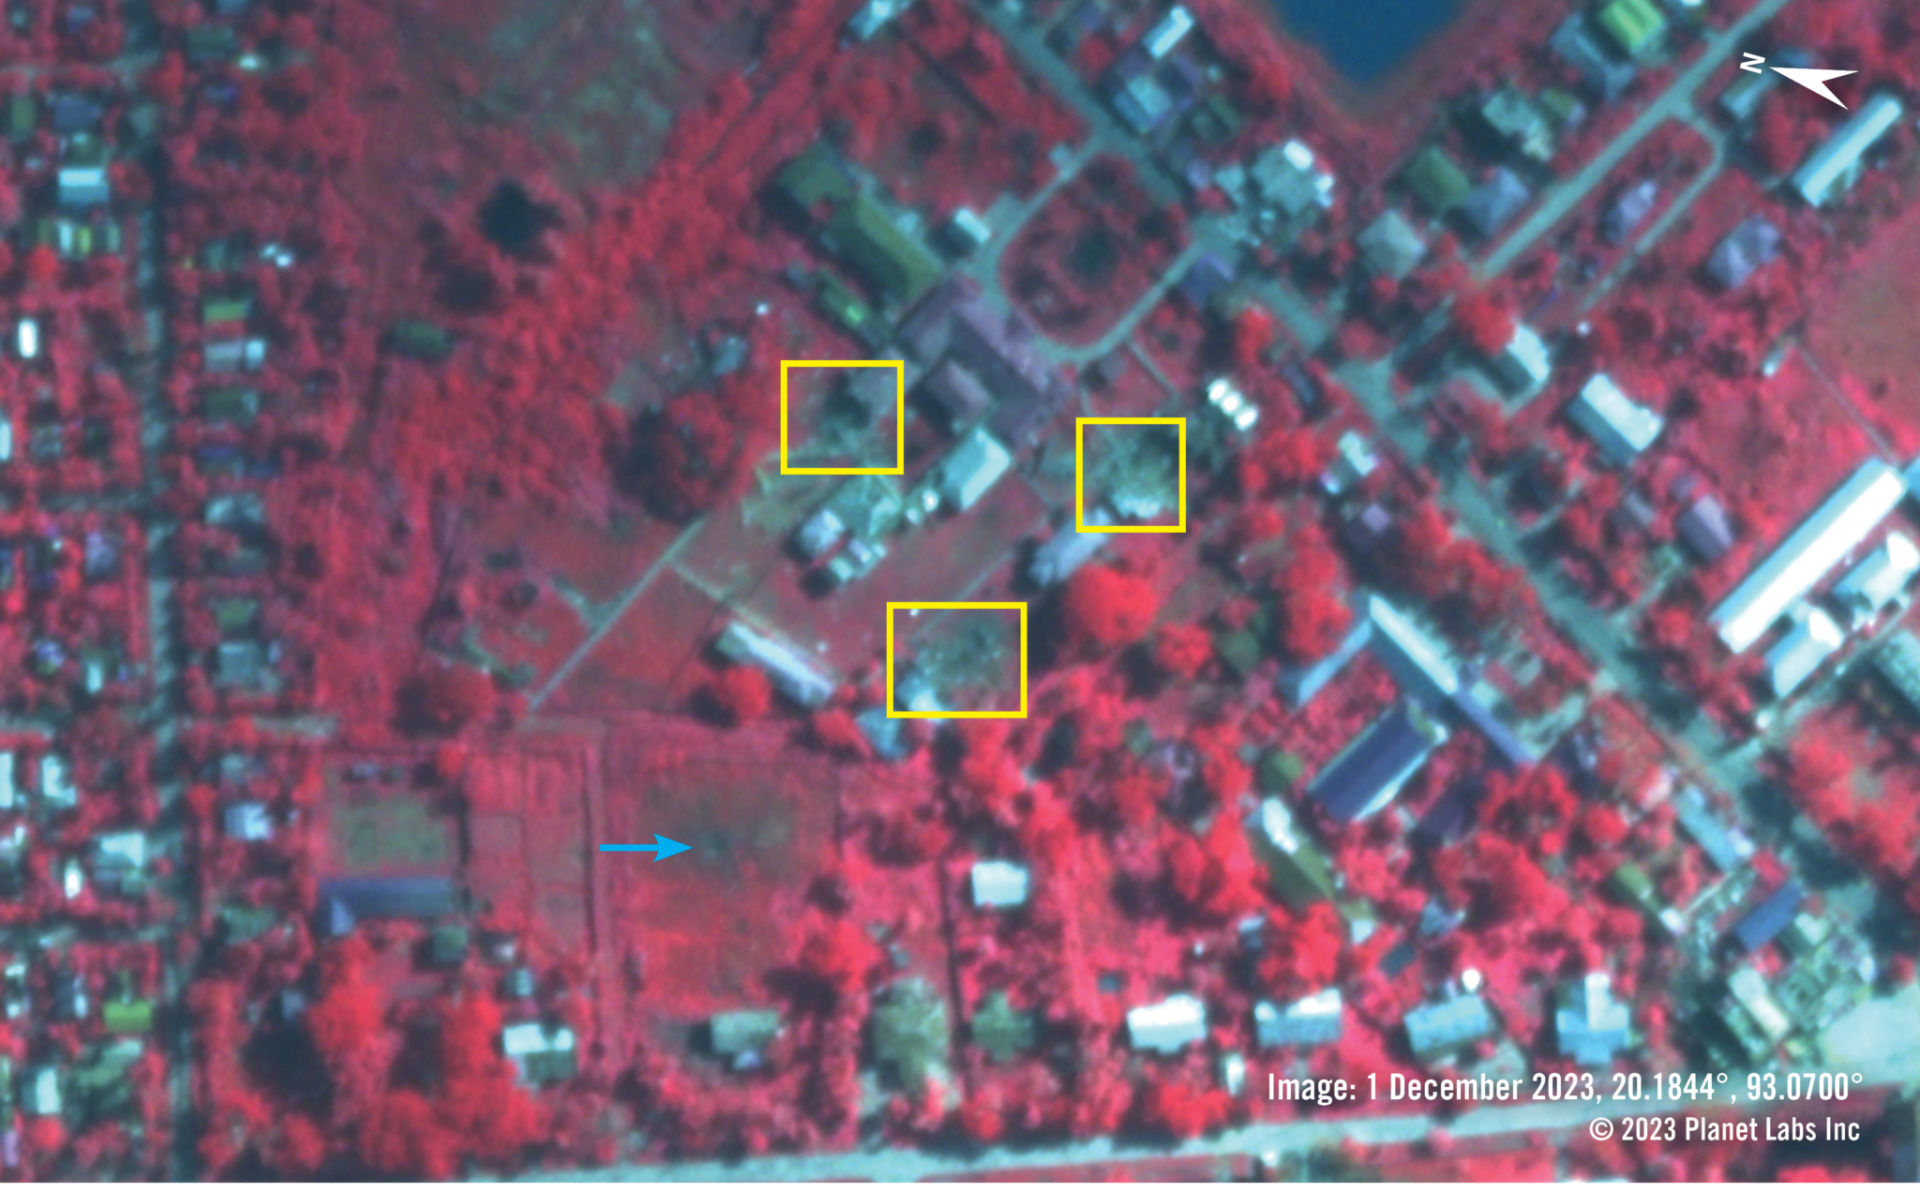 2023年12月1日，報導中的醫院區域的假色近紅外線衛星影像。健康的植被呈現紅色，不健康或燒毀的植披呈現較深的黑色或棕色。黃色方塊標記的區域為近期受損的建築。藍色箭頭則是指向直徑約4公尺的大坑洞。